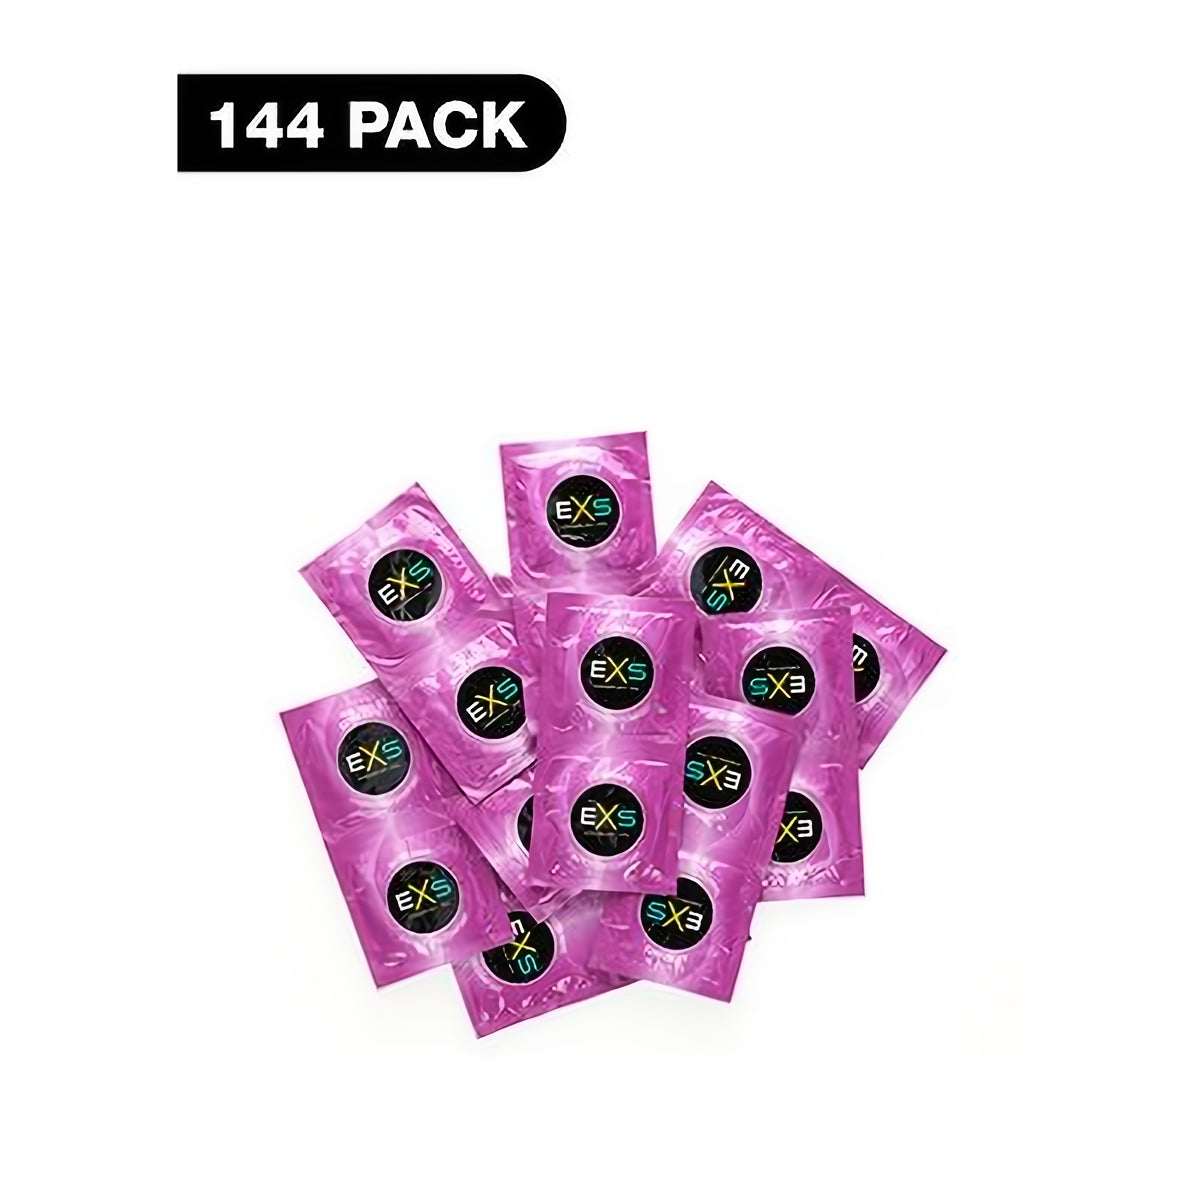 EXS Extra Safe - Condoms - 144 Pieces - EroticToyzProducten,Veilige Seks, Verzorging Hulp,Veilige Seks,Condooms voor Mannen,,MannelijkEXS